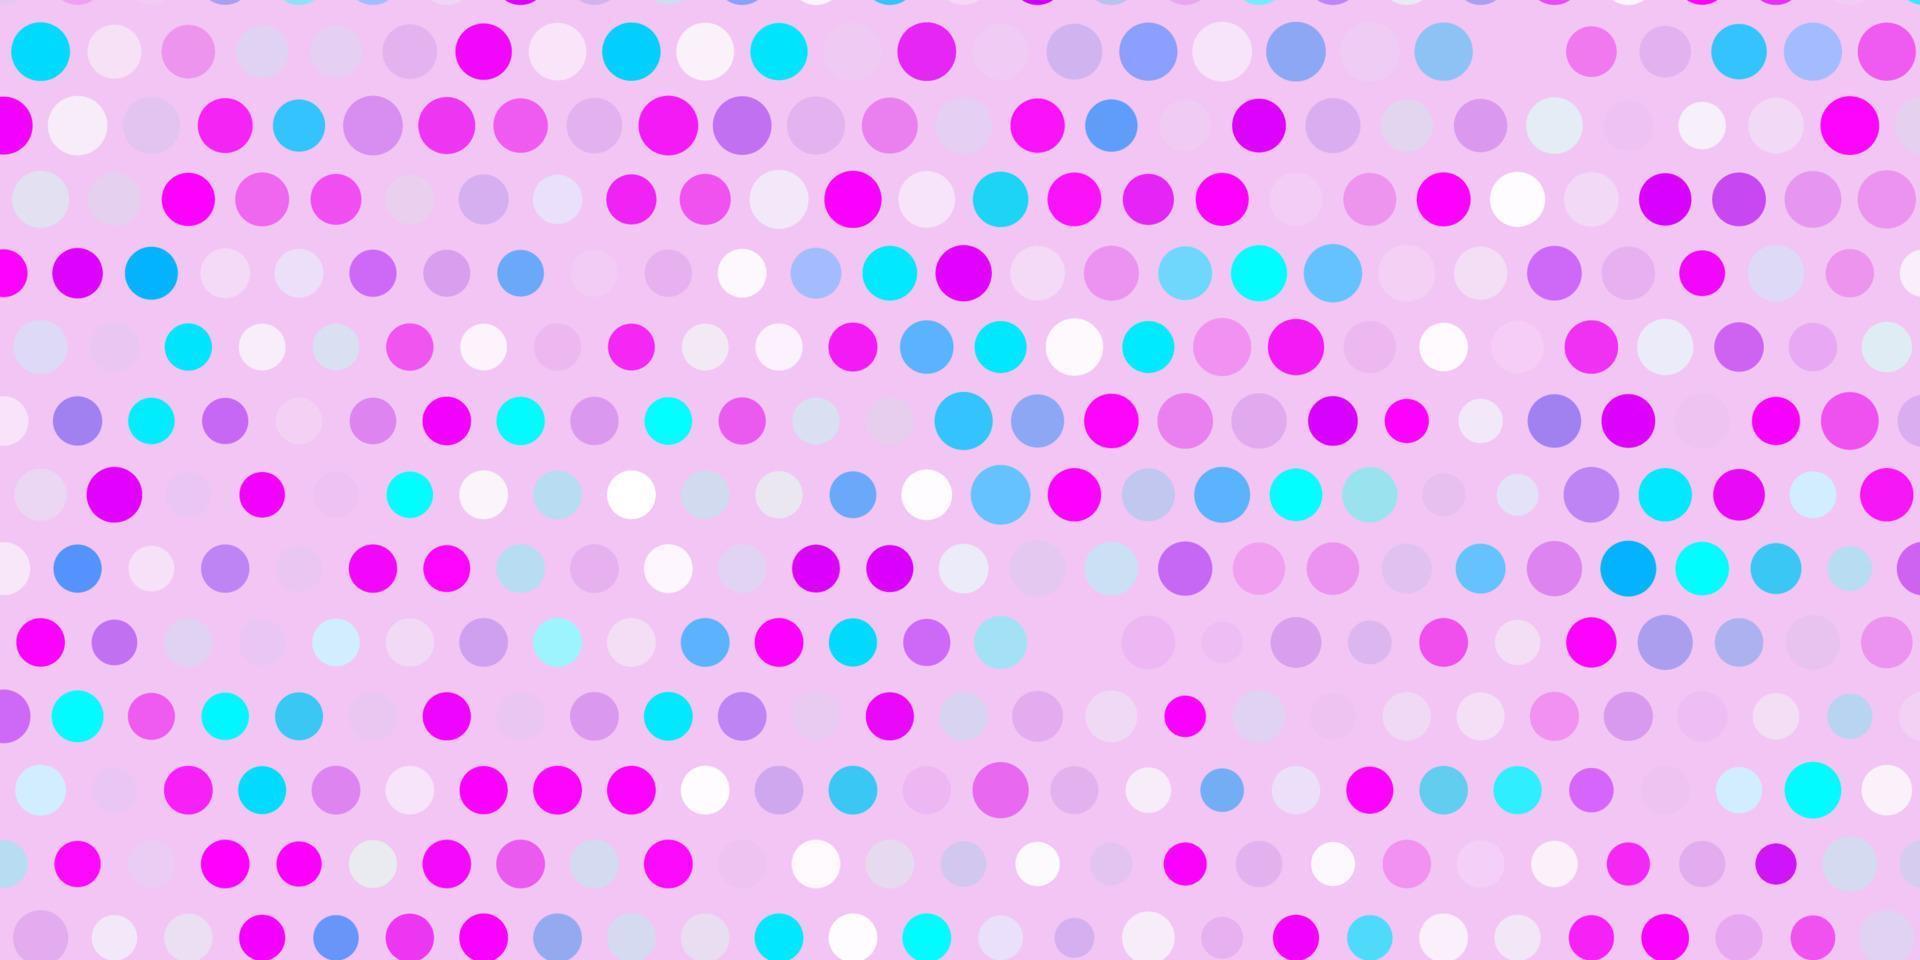 Fondo de vector rosa claro, azul con puntos.